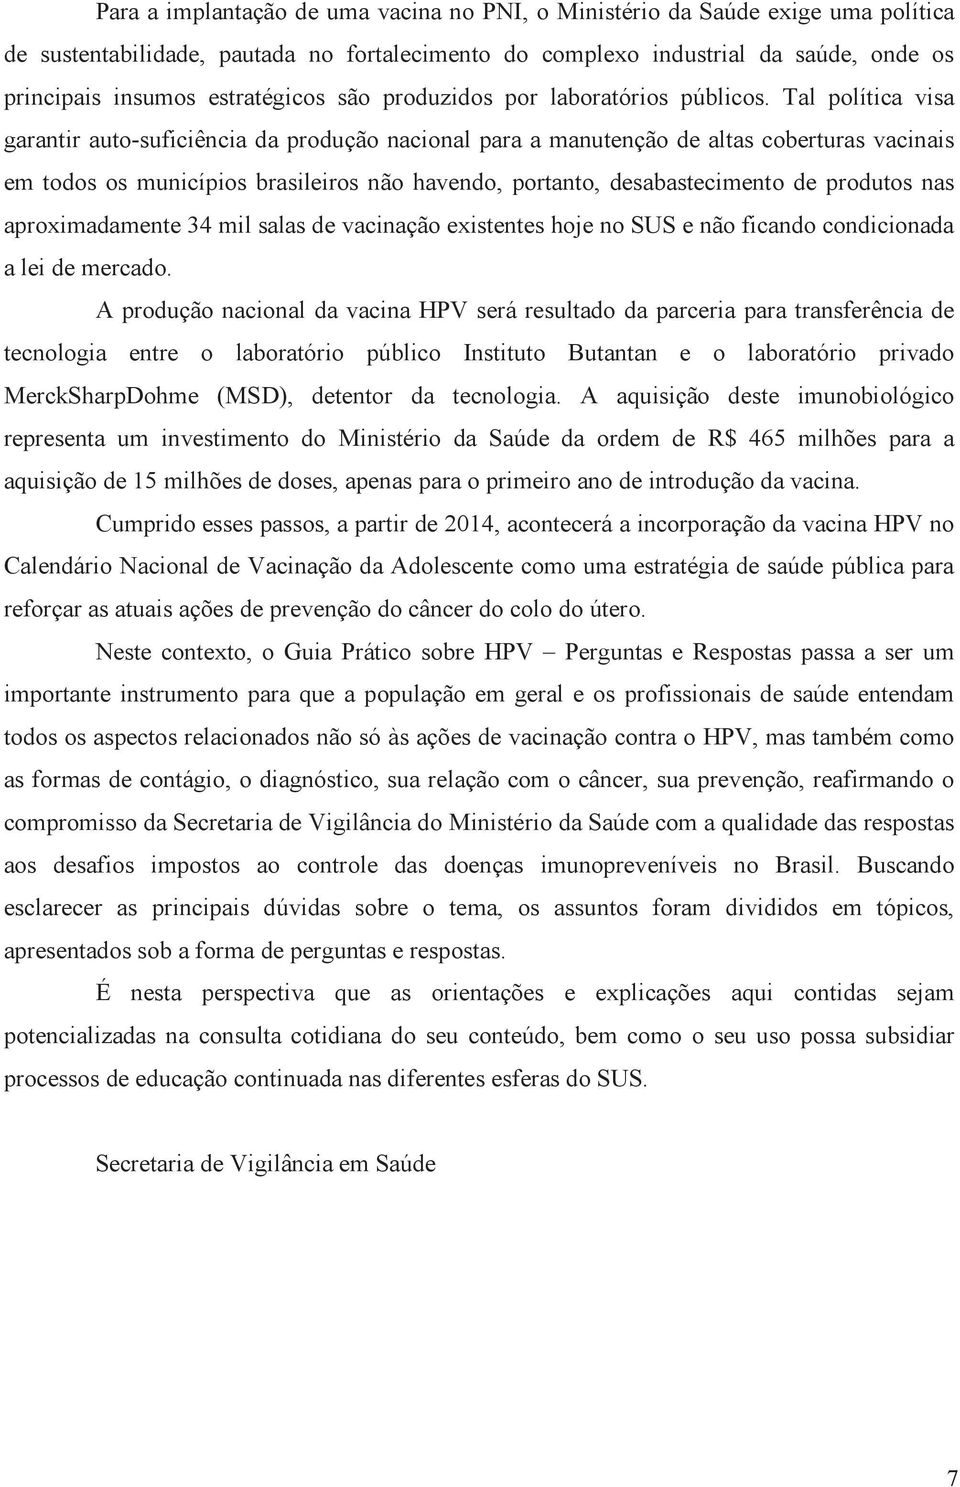 Tal política visa garantir auto-suficiência da produção nacional para a manutenção de altas coberturas vacinais em todos os municípios brasileiros não havendo, portanto, desabastecimento de produtos